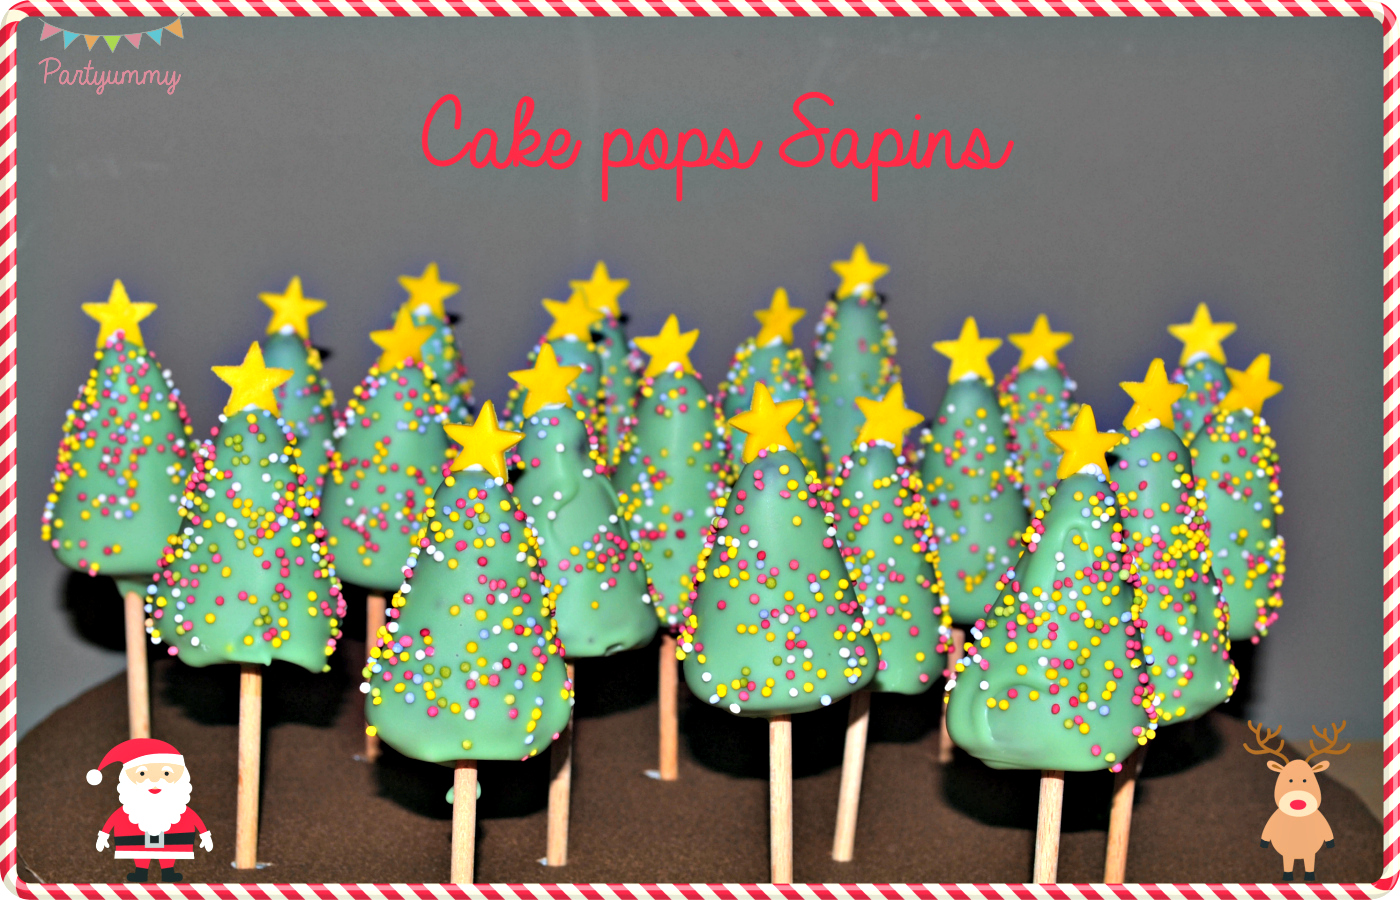 cake-pops-sapin-noel-christmas-tree